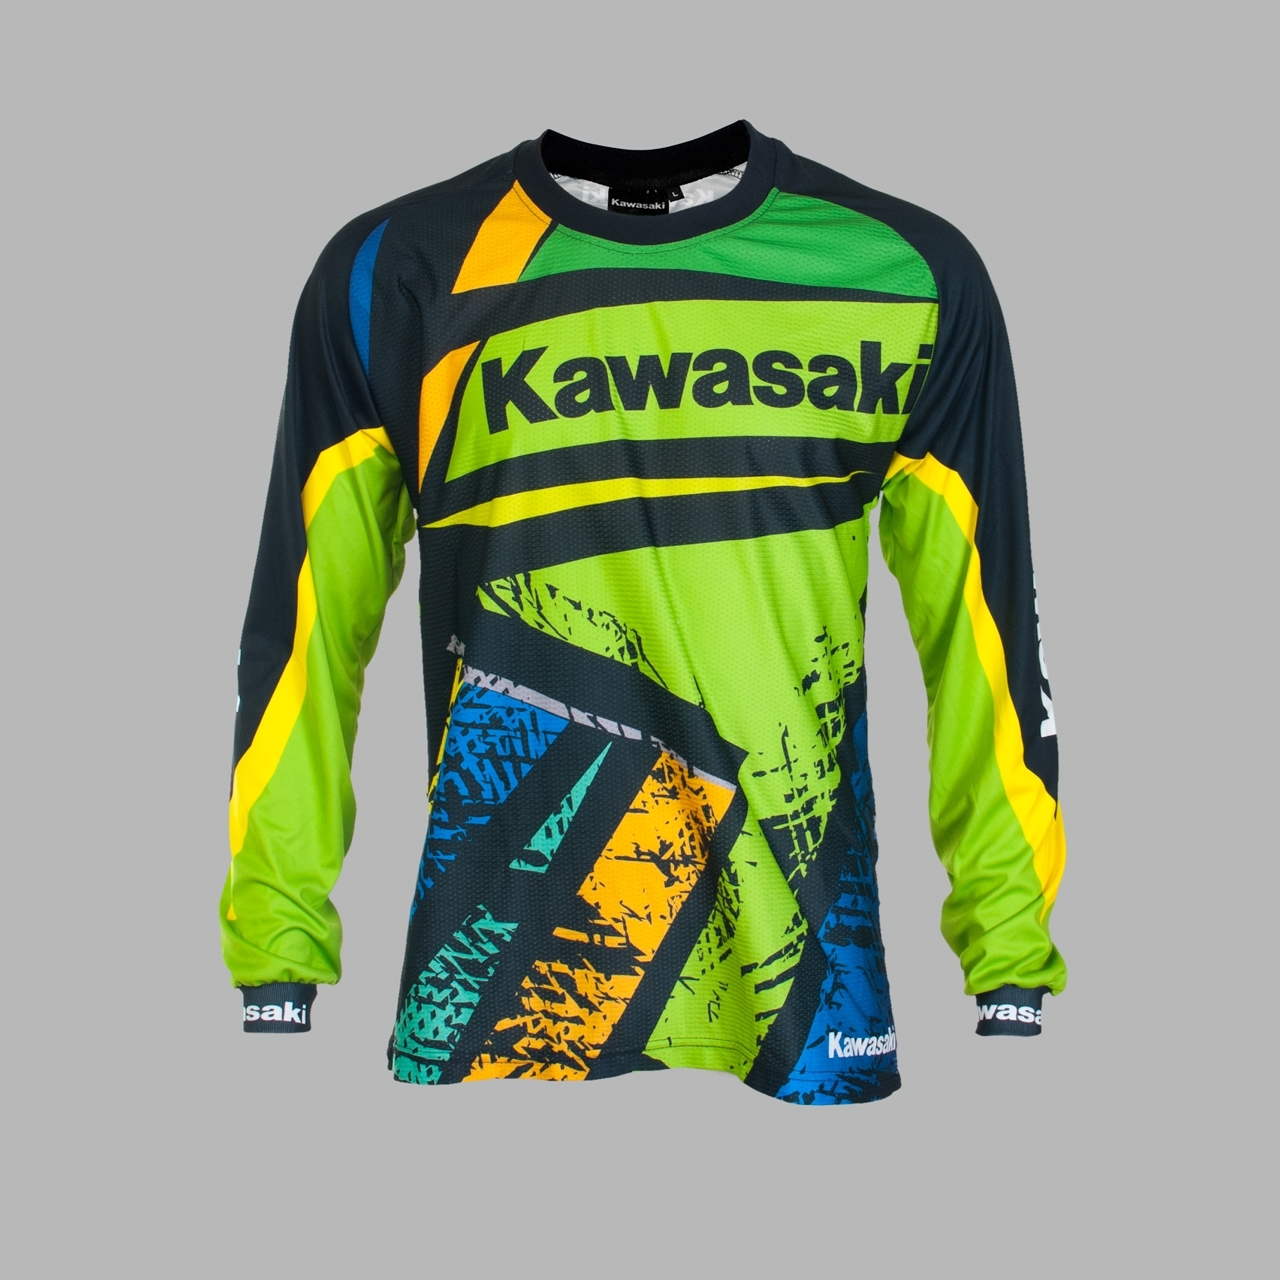  Kawasaki  ANS   kawasaki  enduro jersey